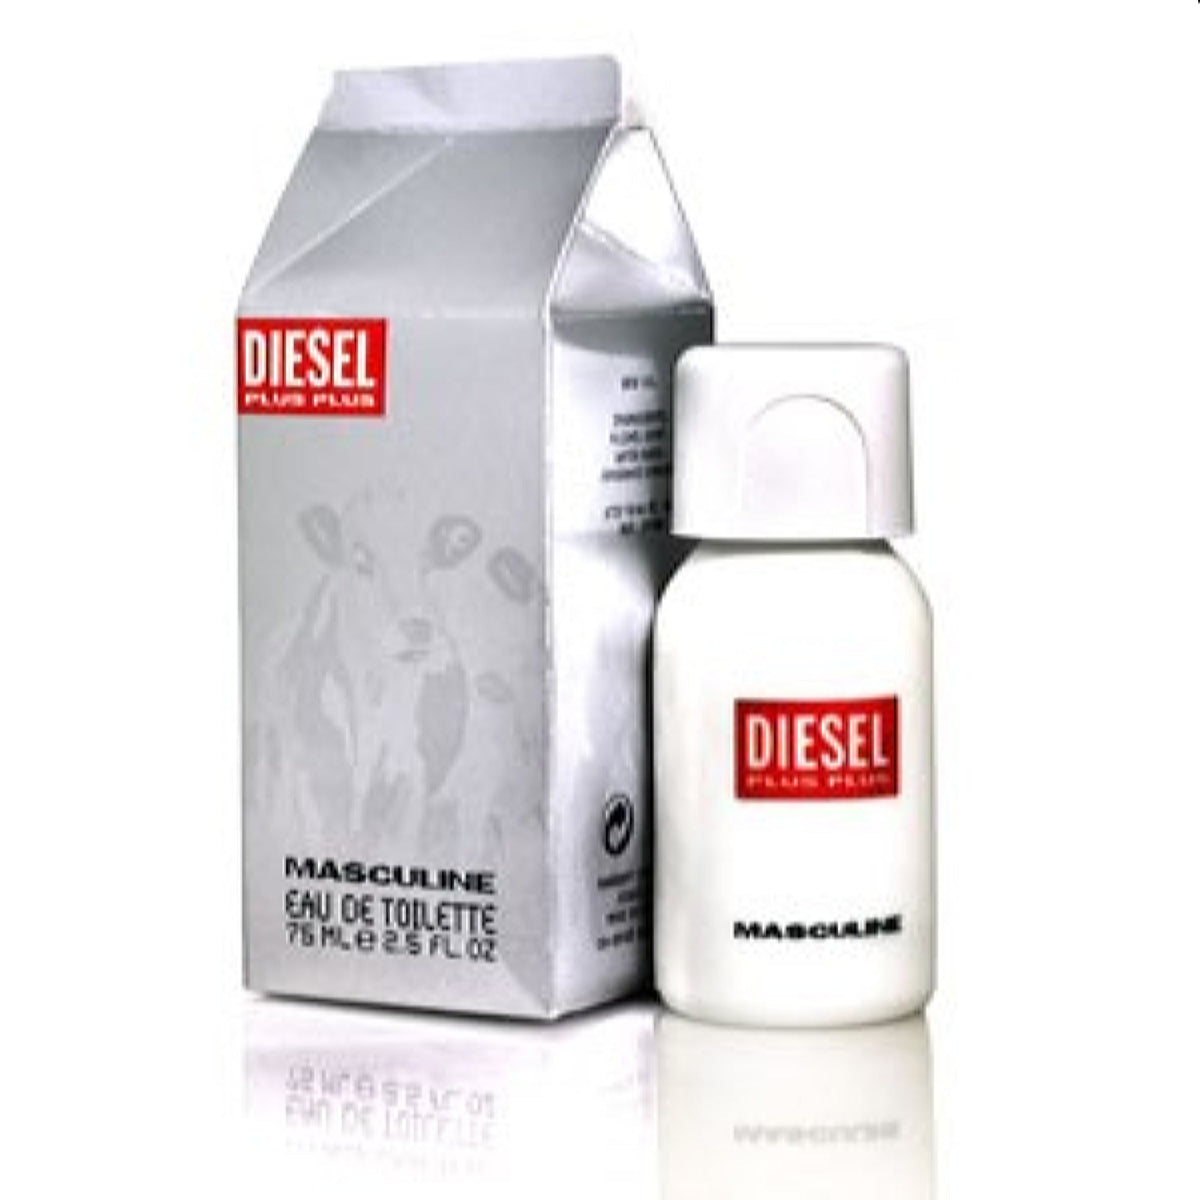 Diesel Plus Plus Diesel Edt Spray 2.5 Oz For Men 29100